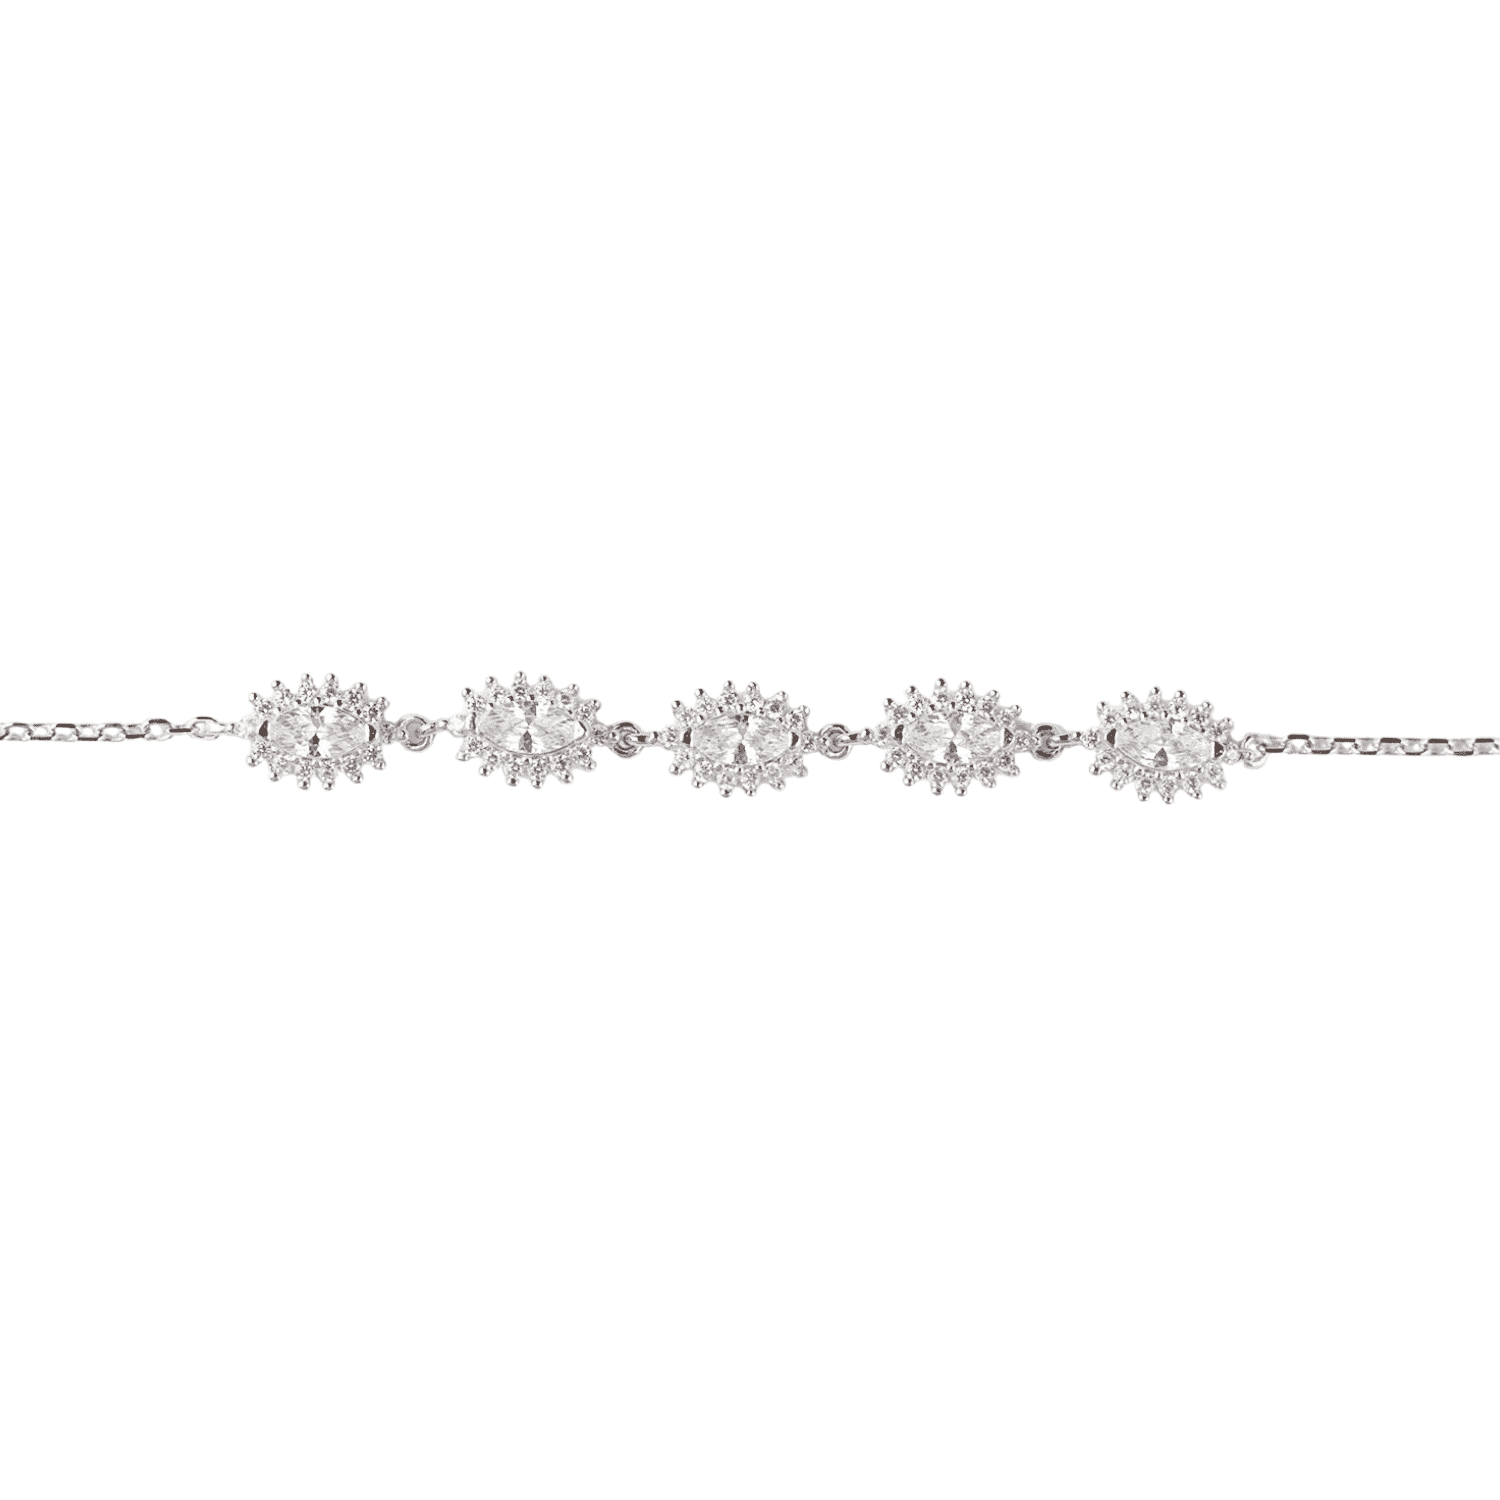 Asfour tear + rounded Zircon Stone 925 Silver Chain-Bracelet - B1947-W